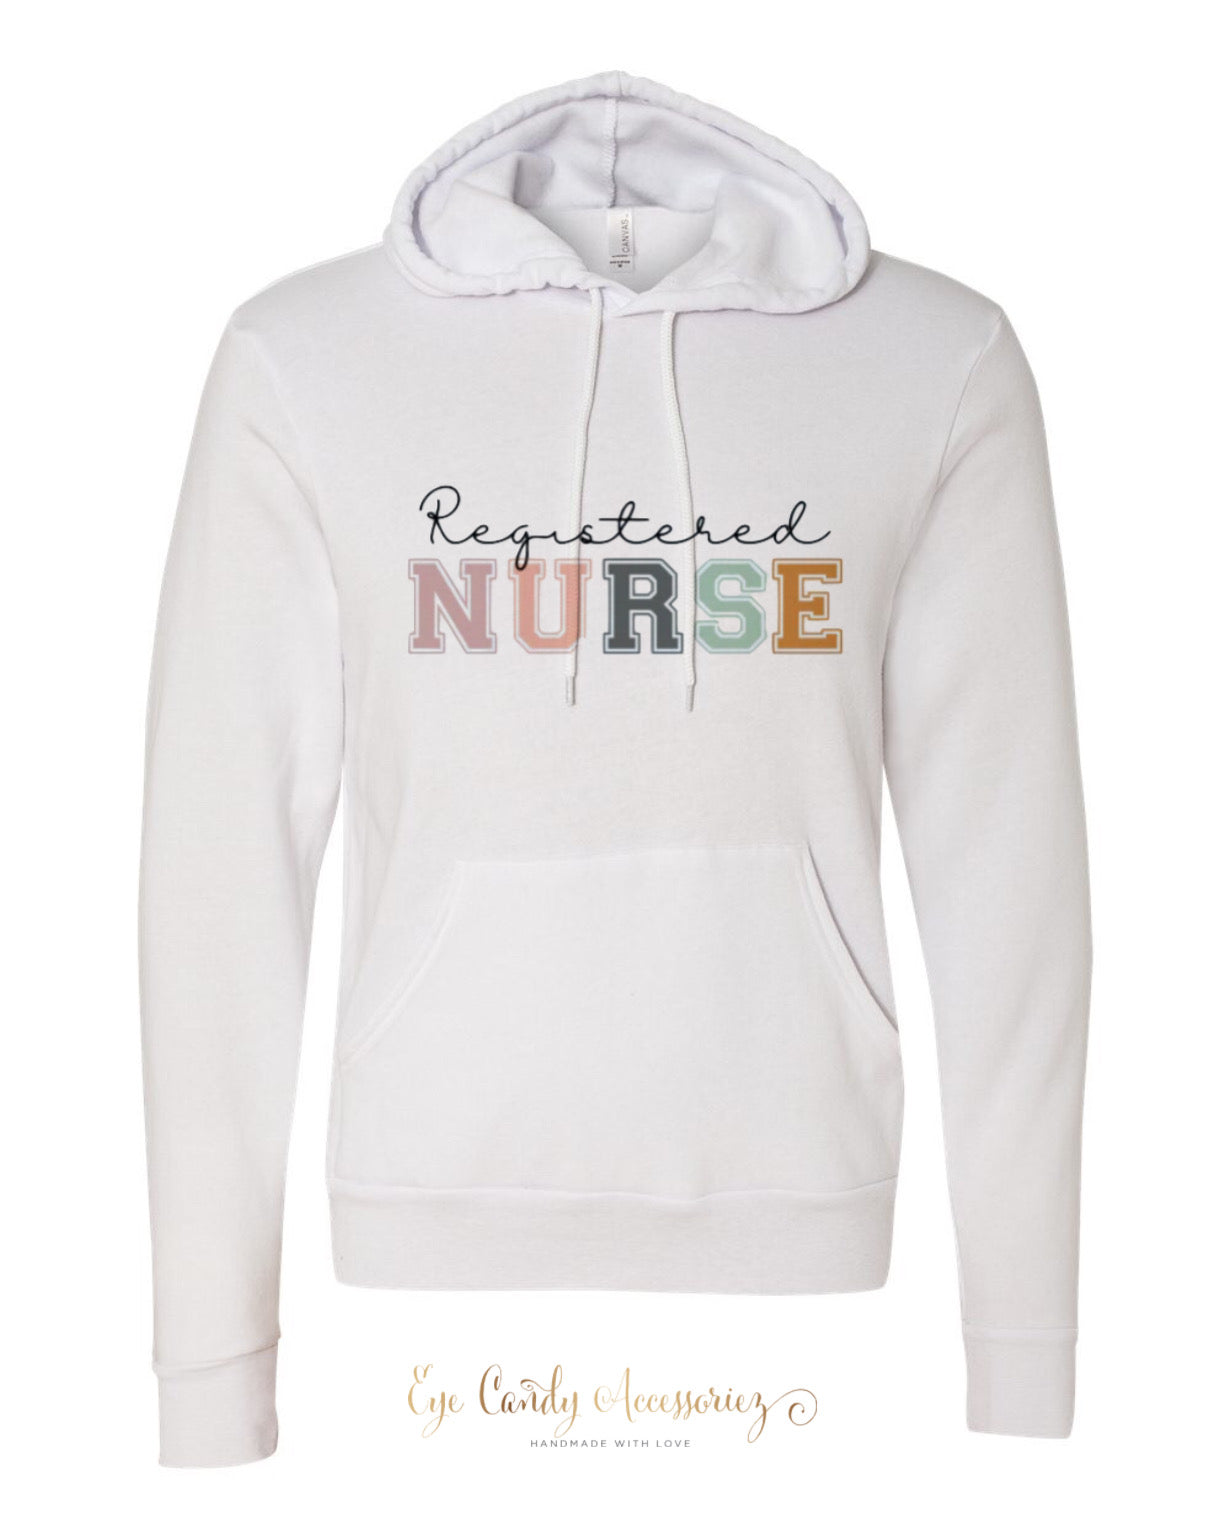 Camiseta y suéter de enfermera registrada - Unisex Blanco